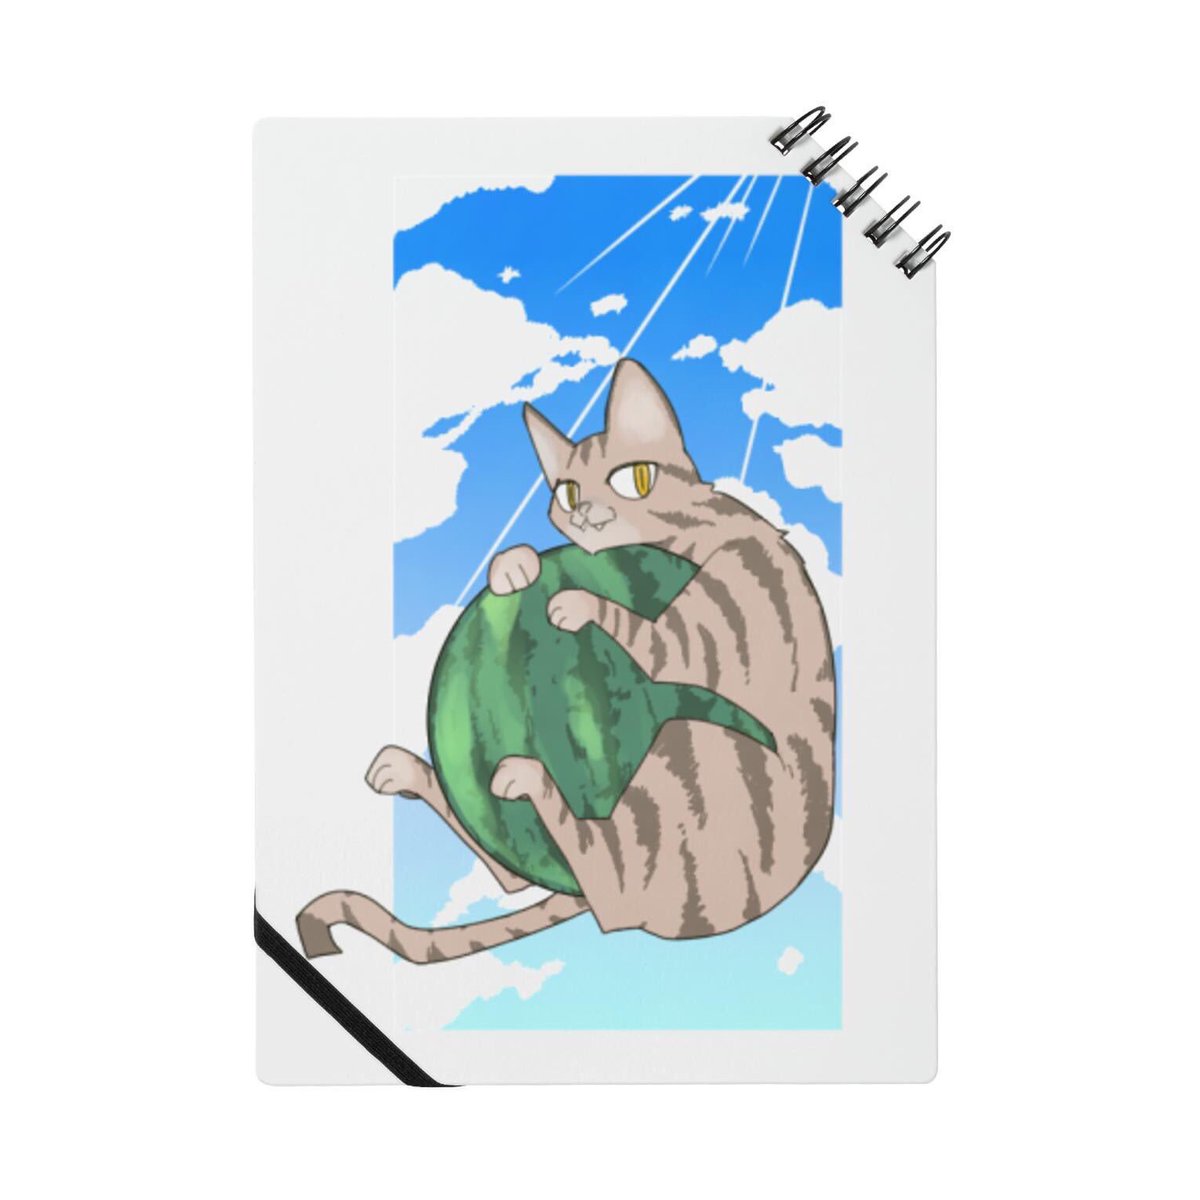 「https://t.co/EMja2v1iRX
猫グッズも見てってくれよな! 」|なごのイラスト